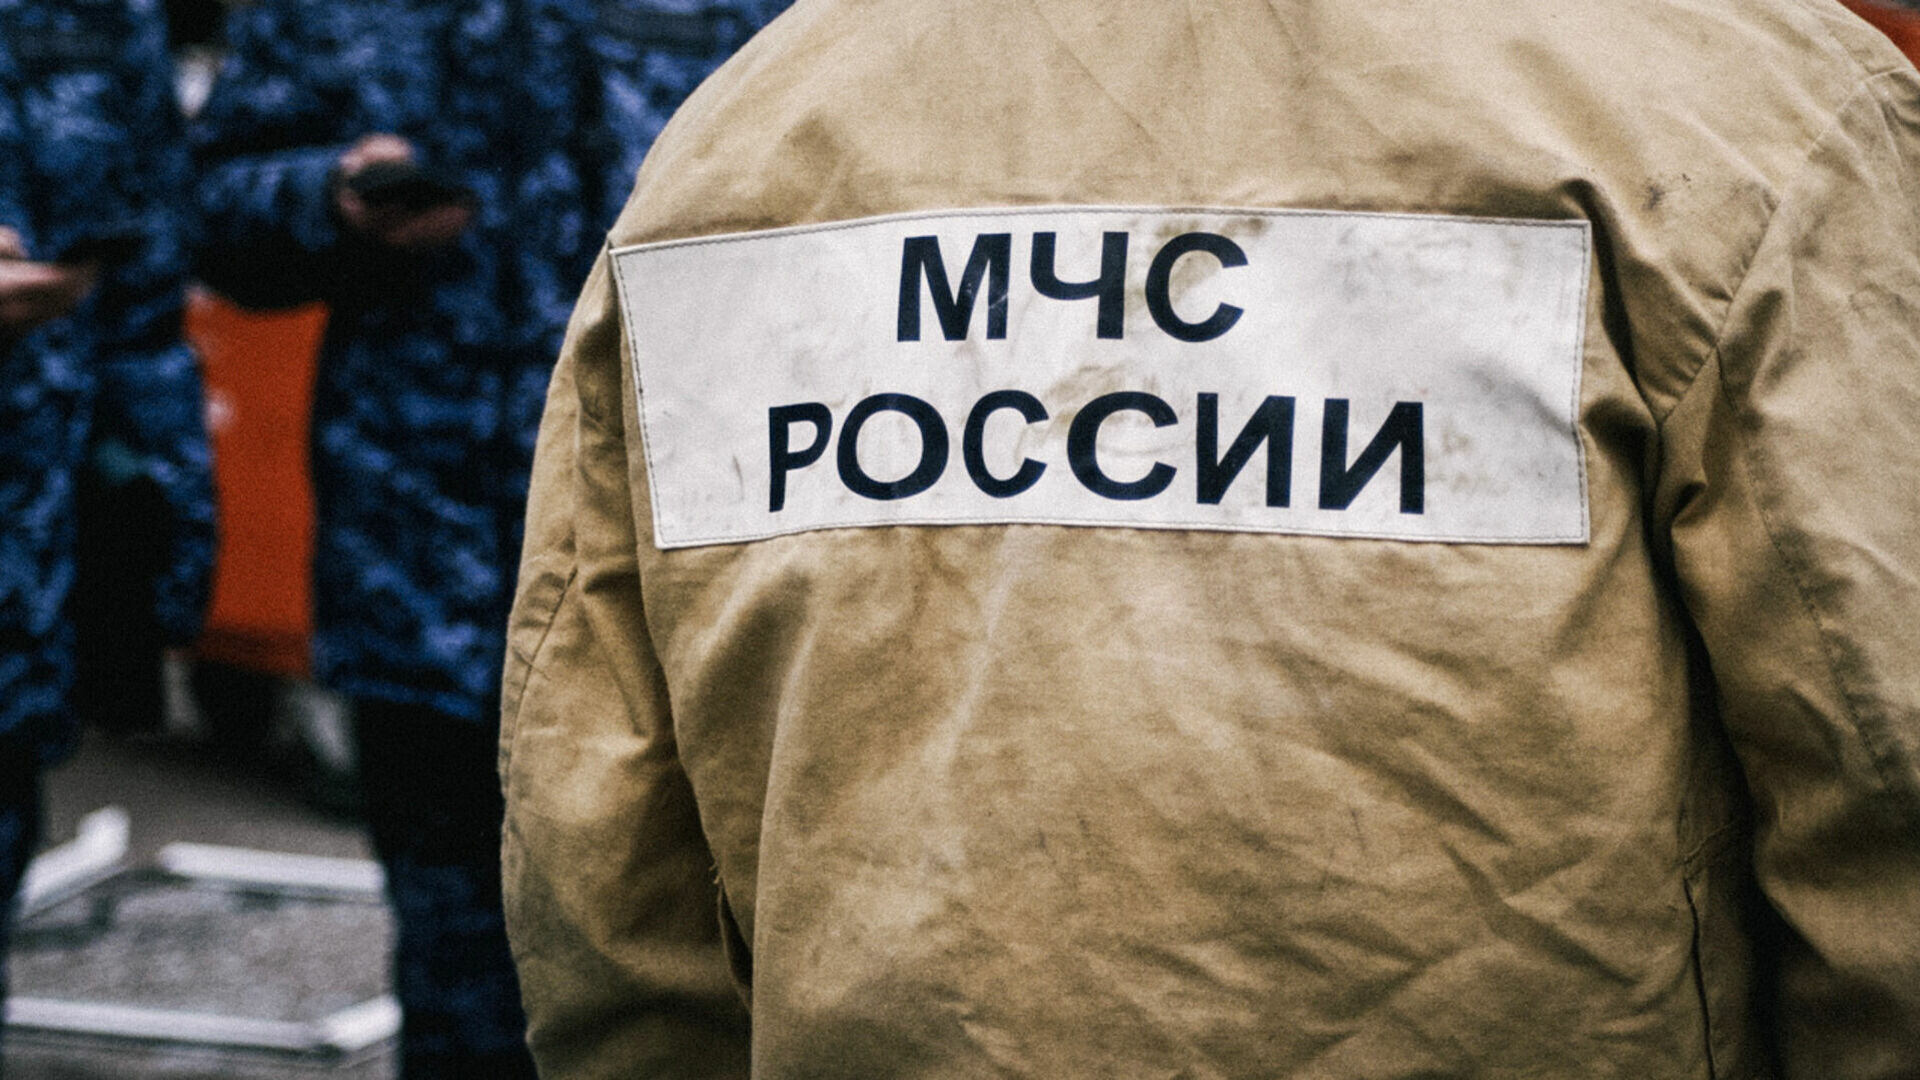 Бригада МЧС спасла многодетную семью из сугробов в лесу под Владимиром